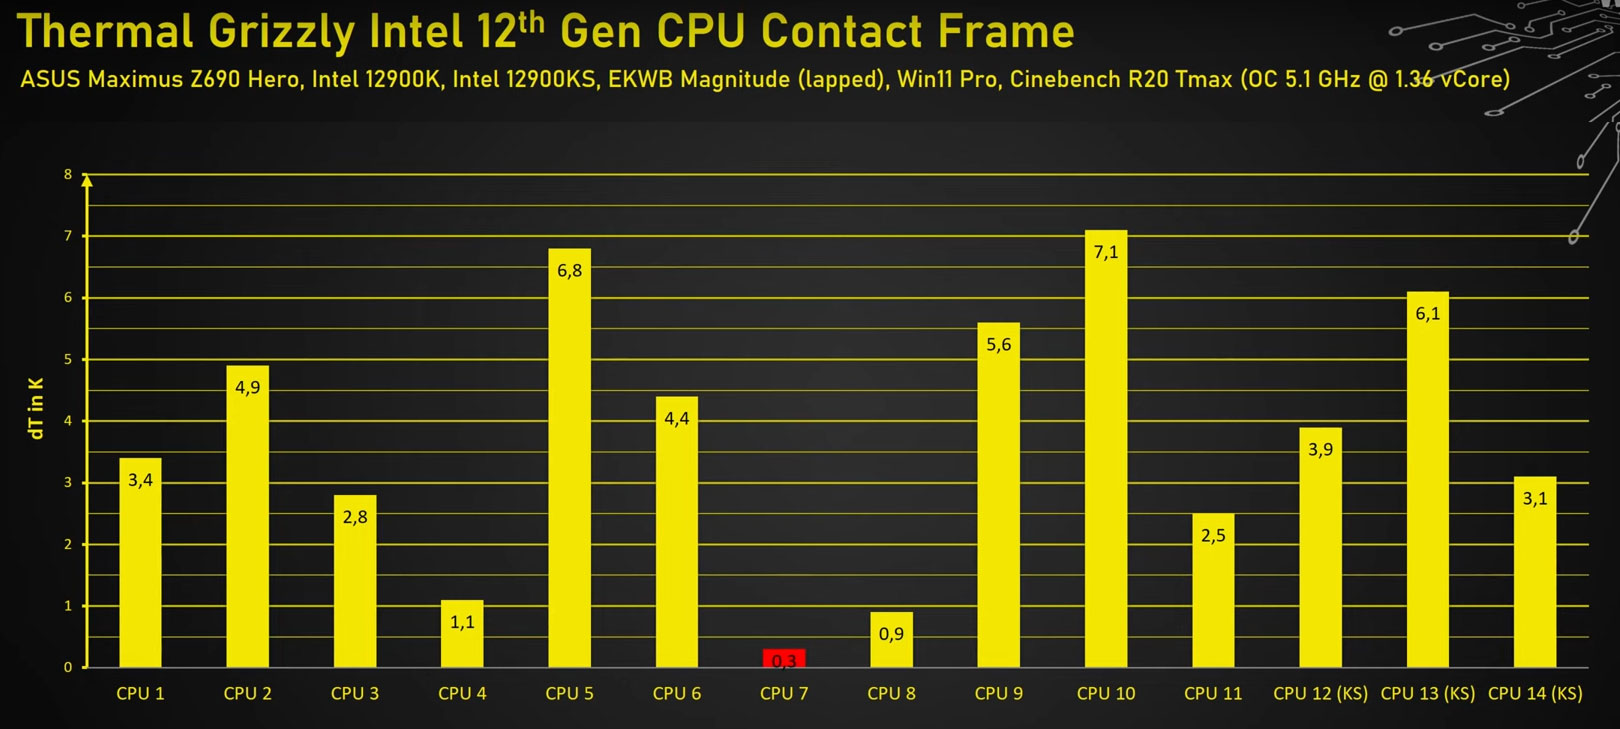 Thermal Grizzly zapowiada dwa produkty do naprawy procesorów Intela